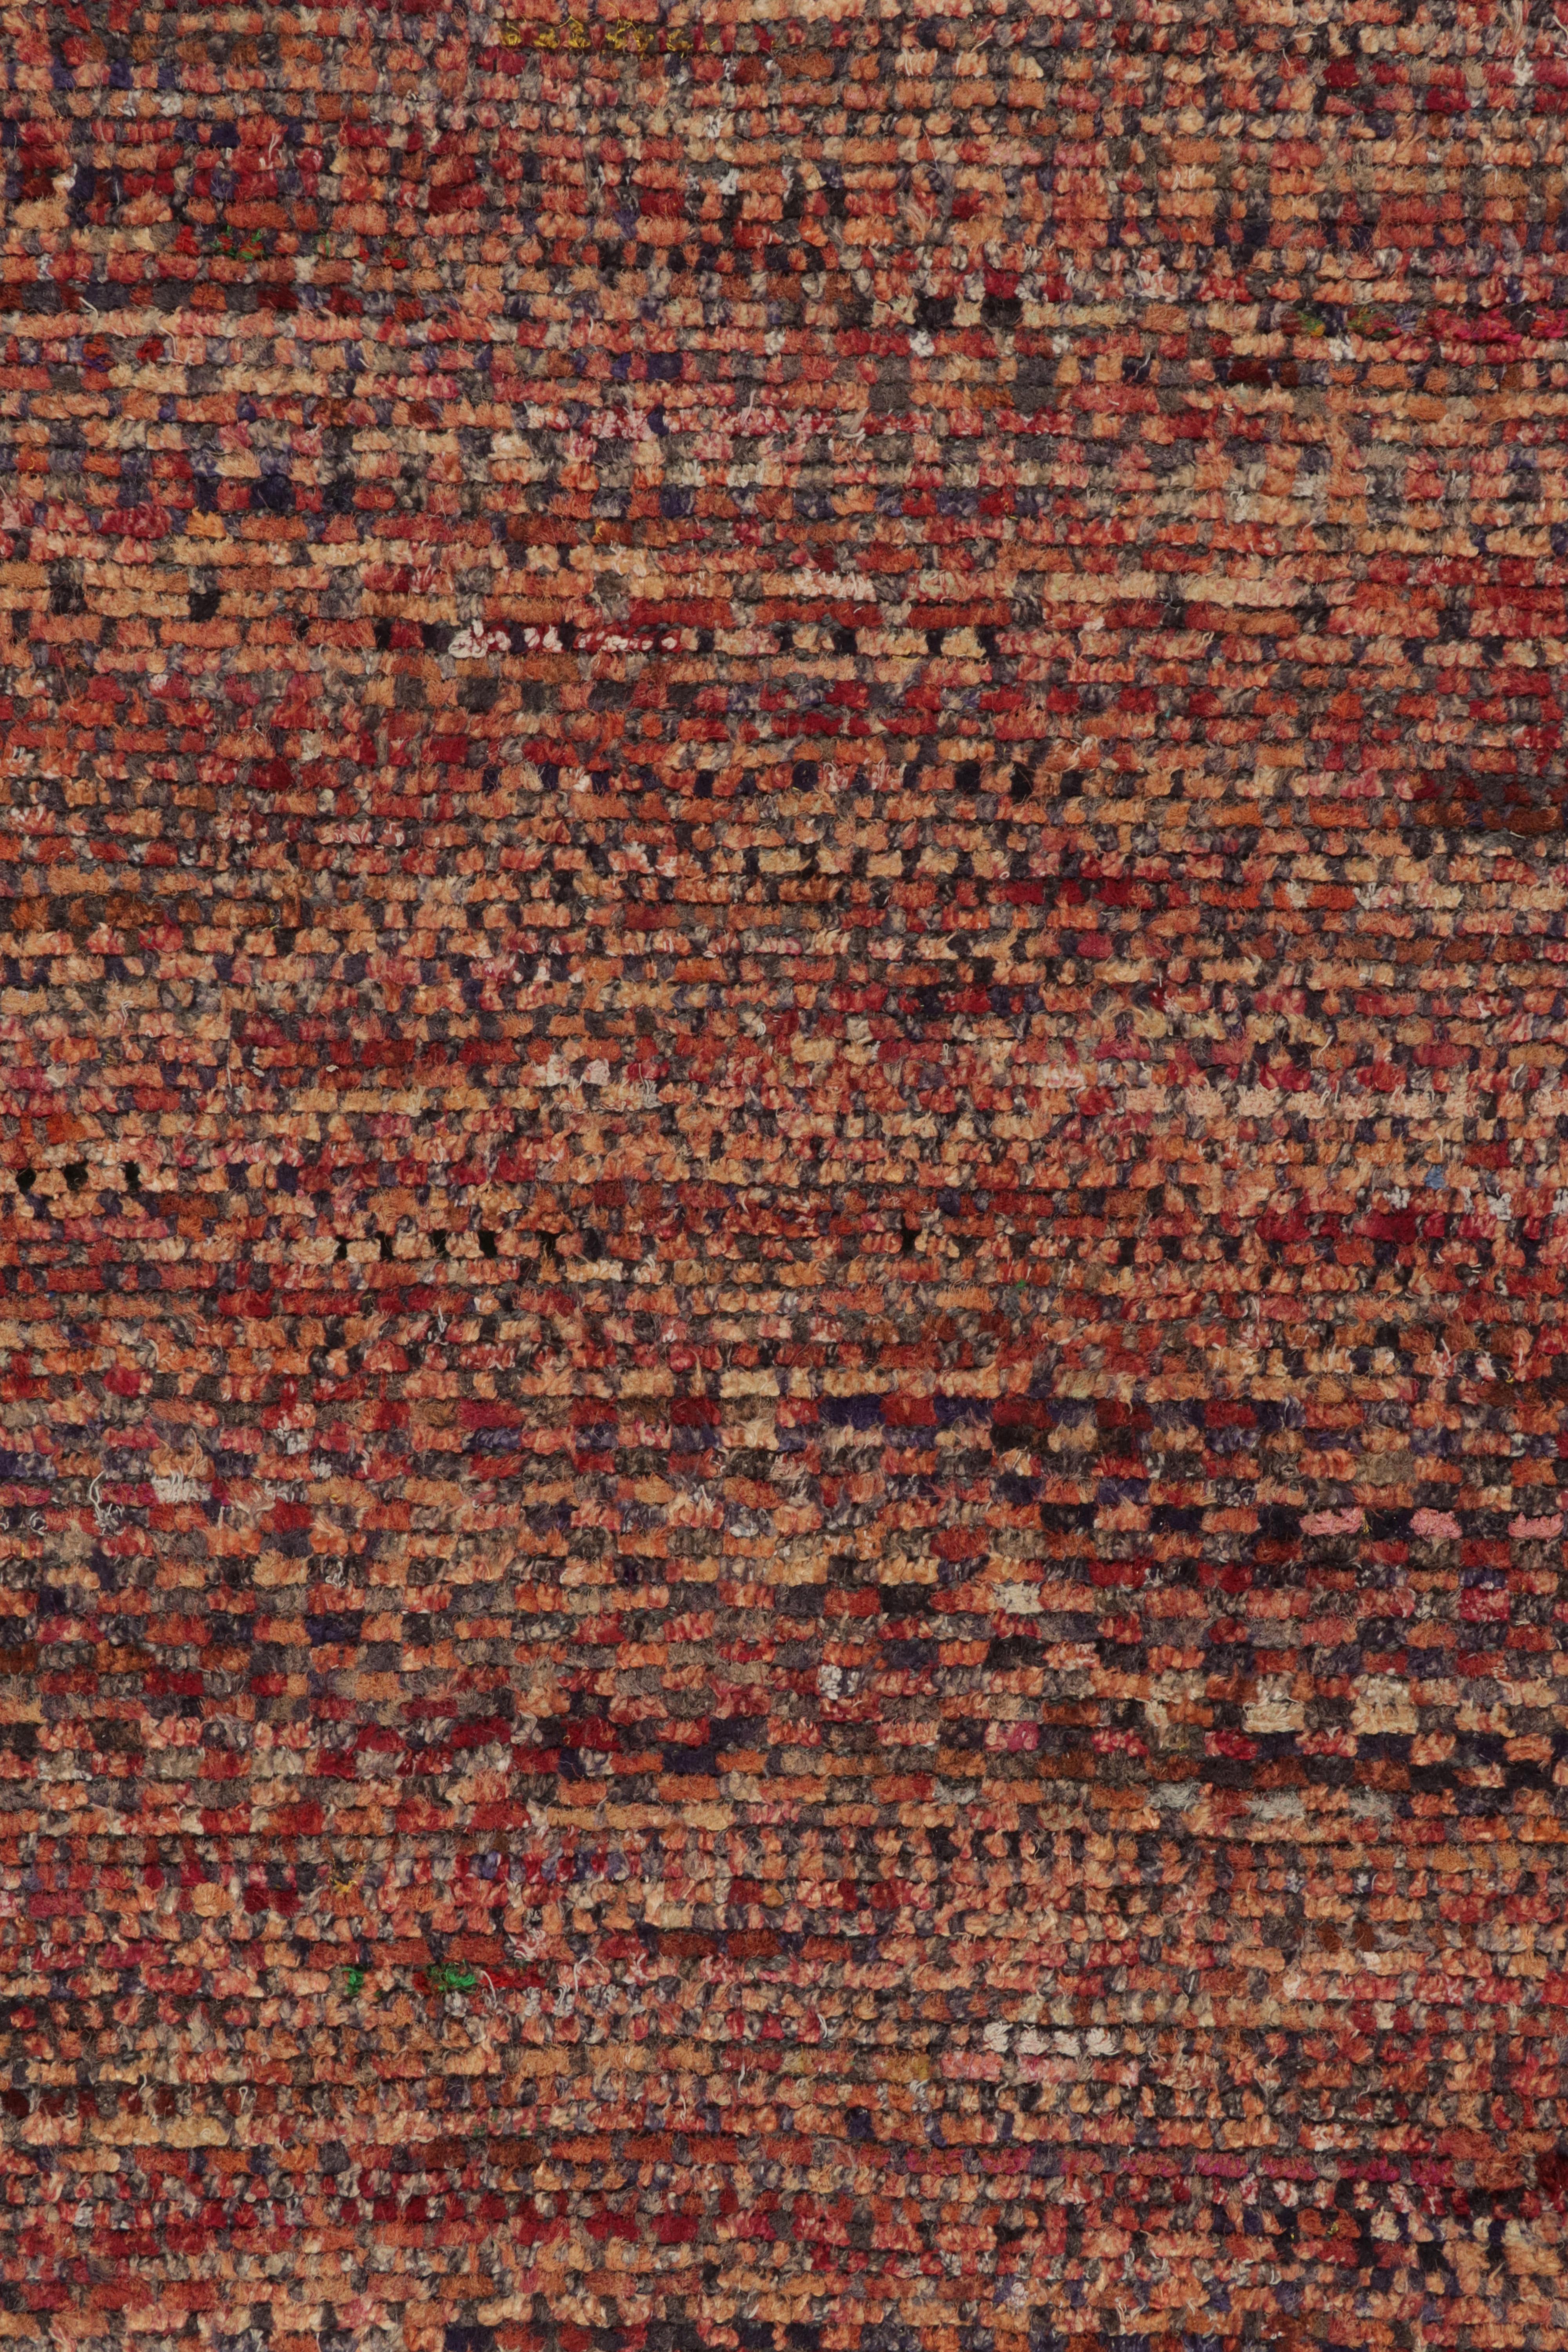 Rug & Kilim's Modern Rug in a Red & Orange-Brown Striae, Geometric Patterns (tapis moderne à rayures rouges et orange-brun, motifs géométriques)